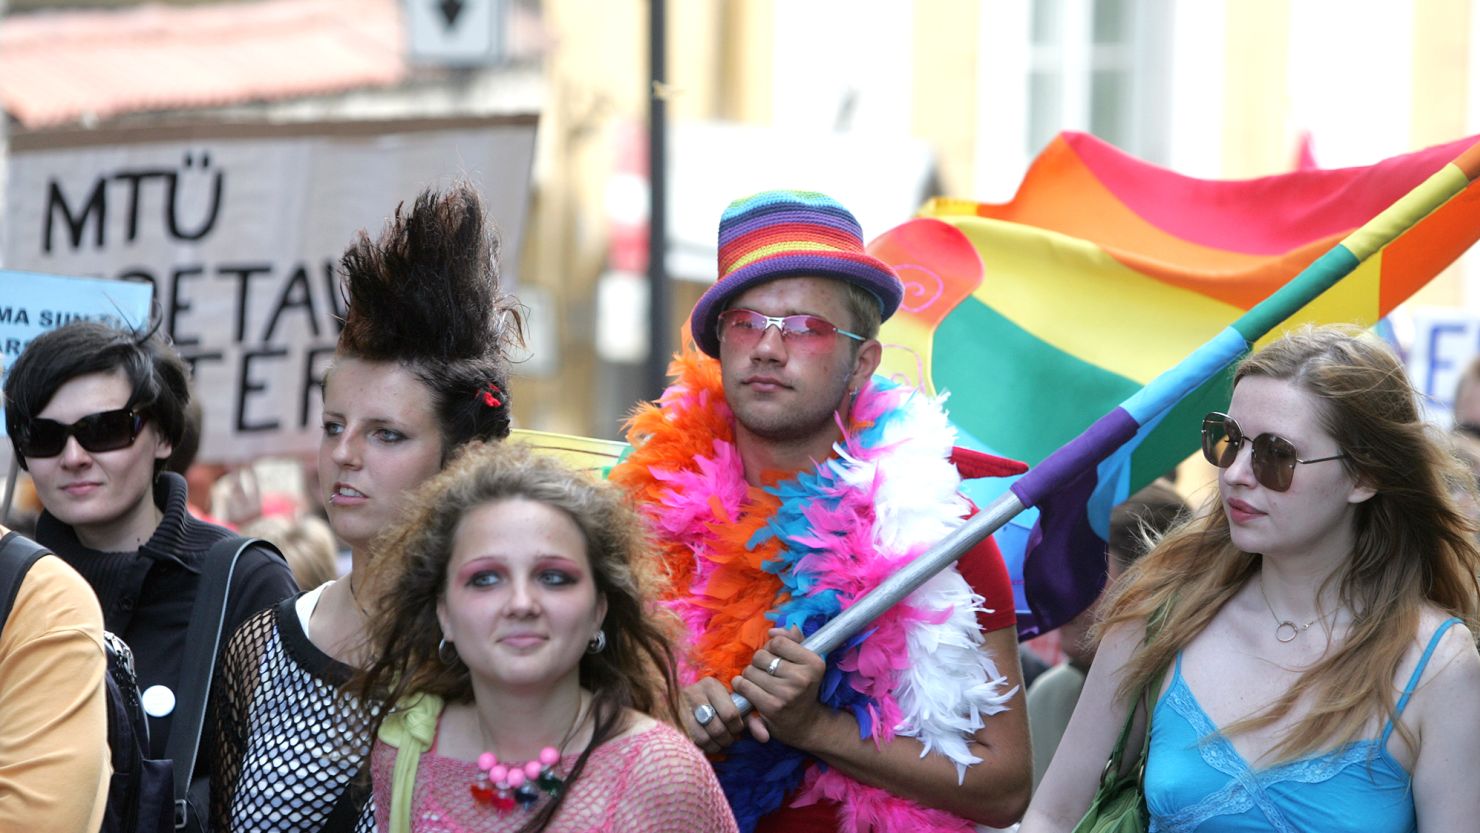 A pride march in Tallinn, Estonia, in 2006.